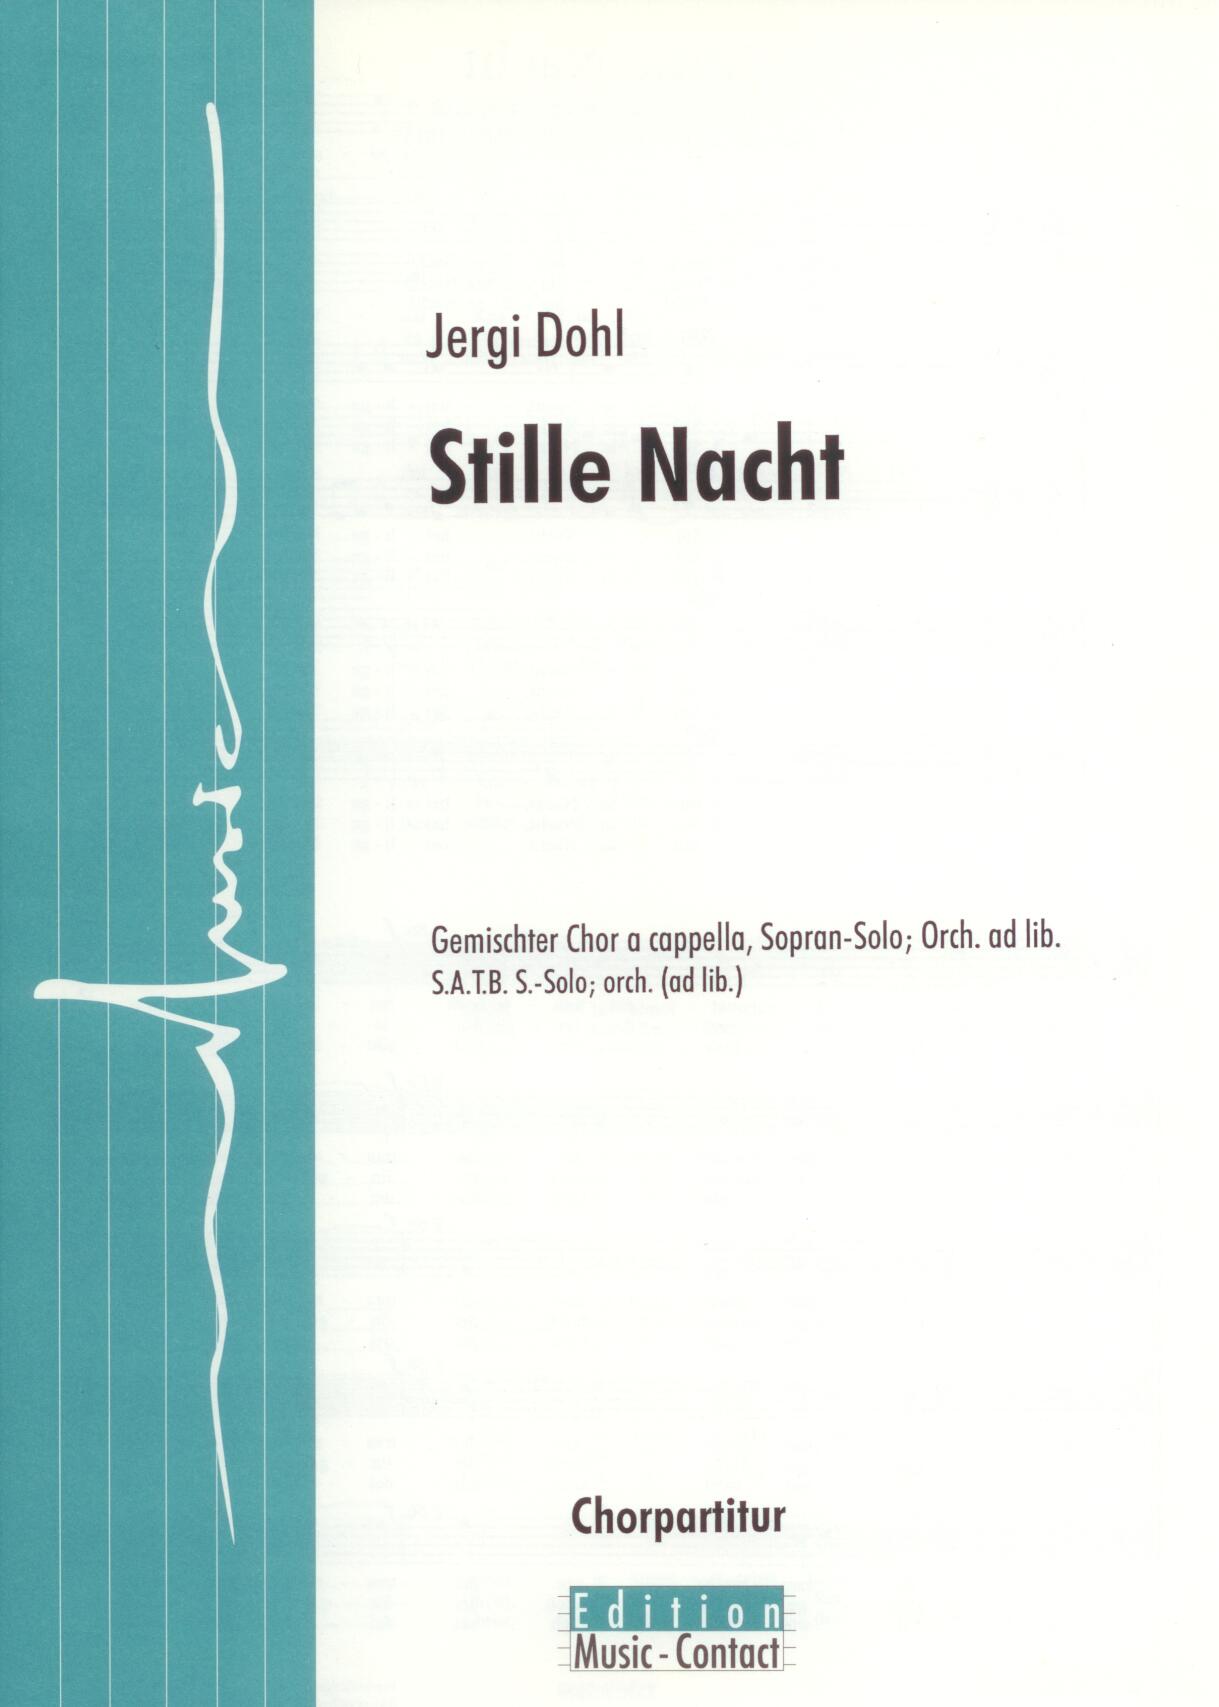 Stille Nacht - Show sample score